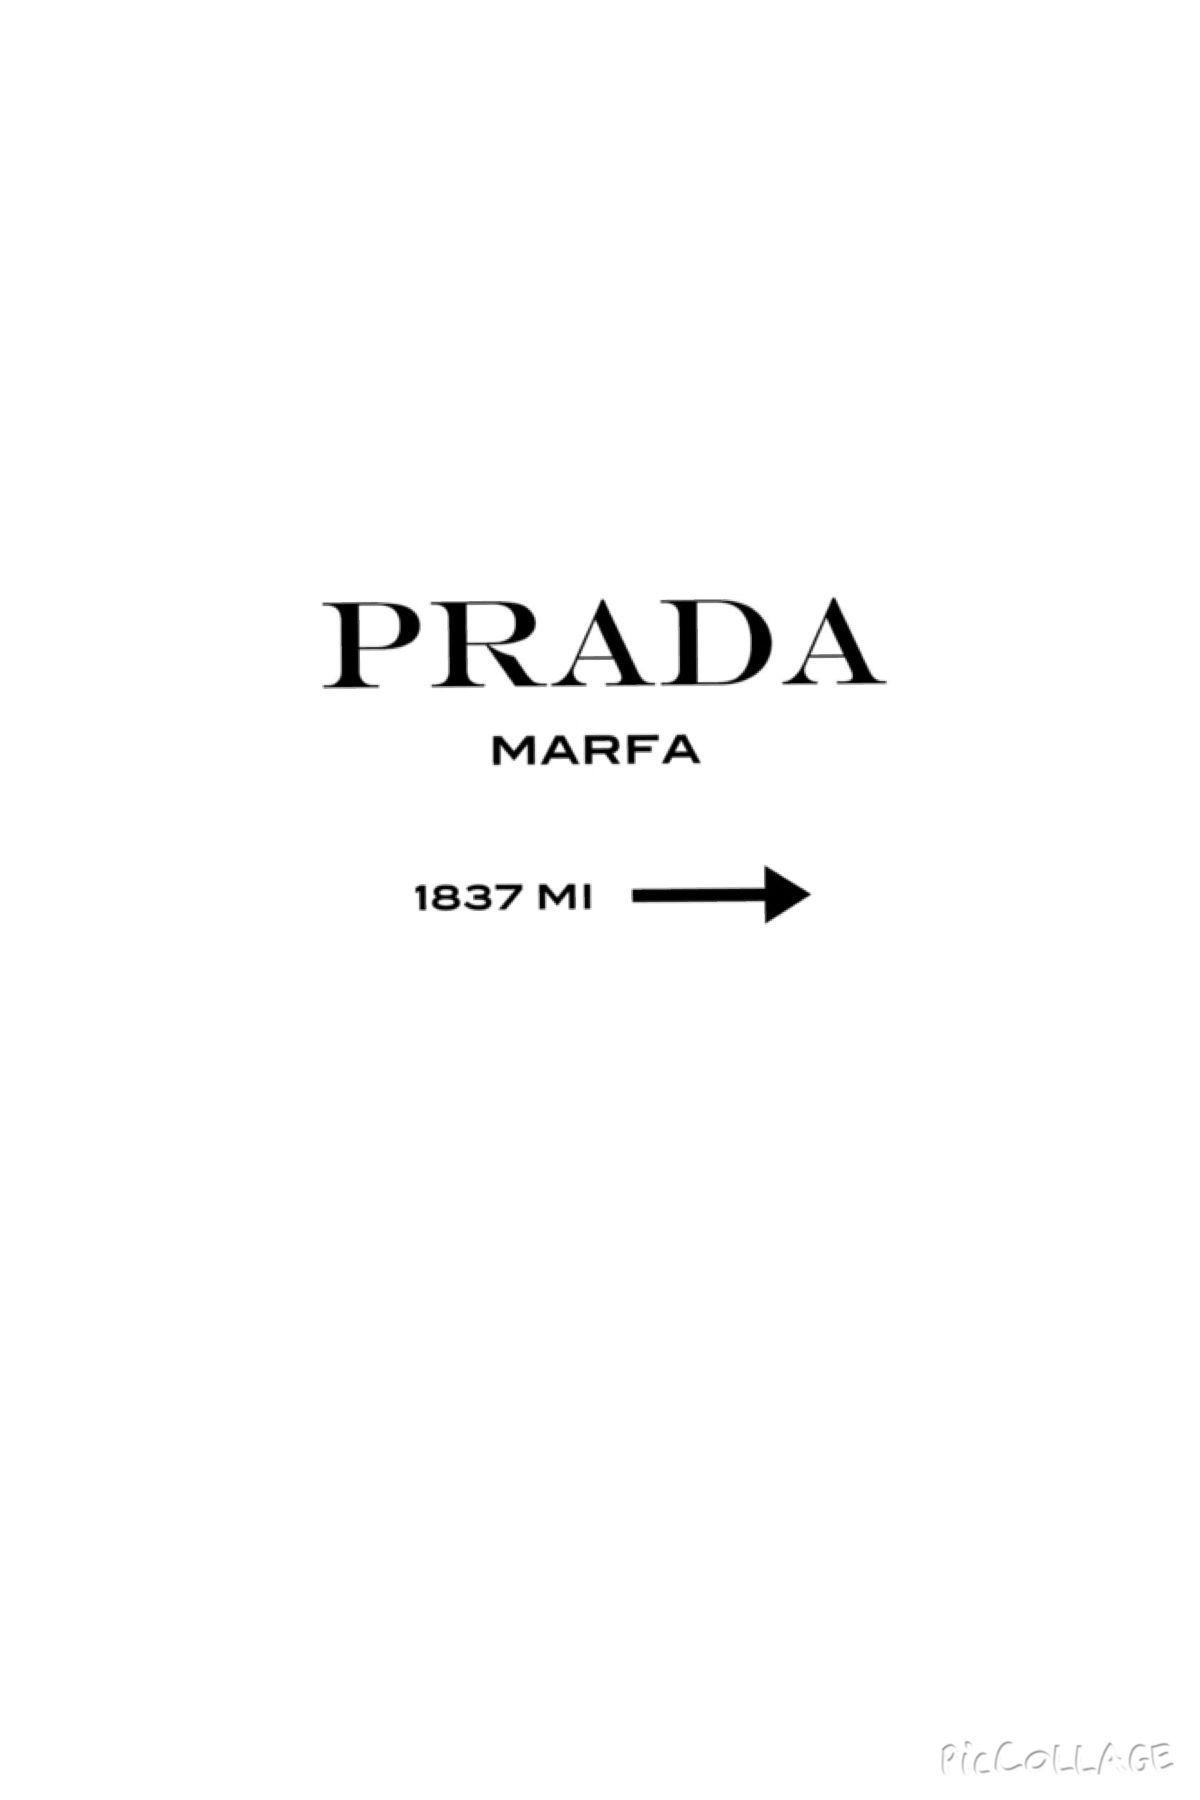 Prada Wallpapers - Wallpaper Cave